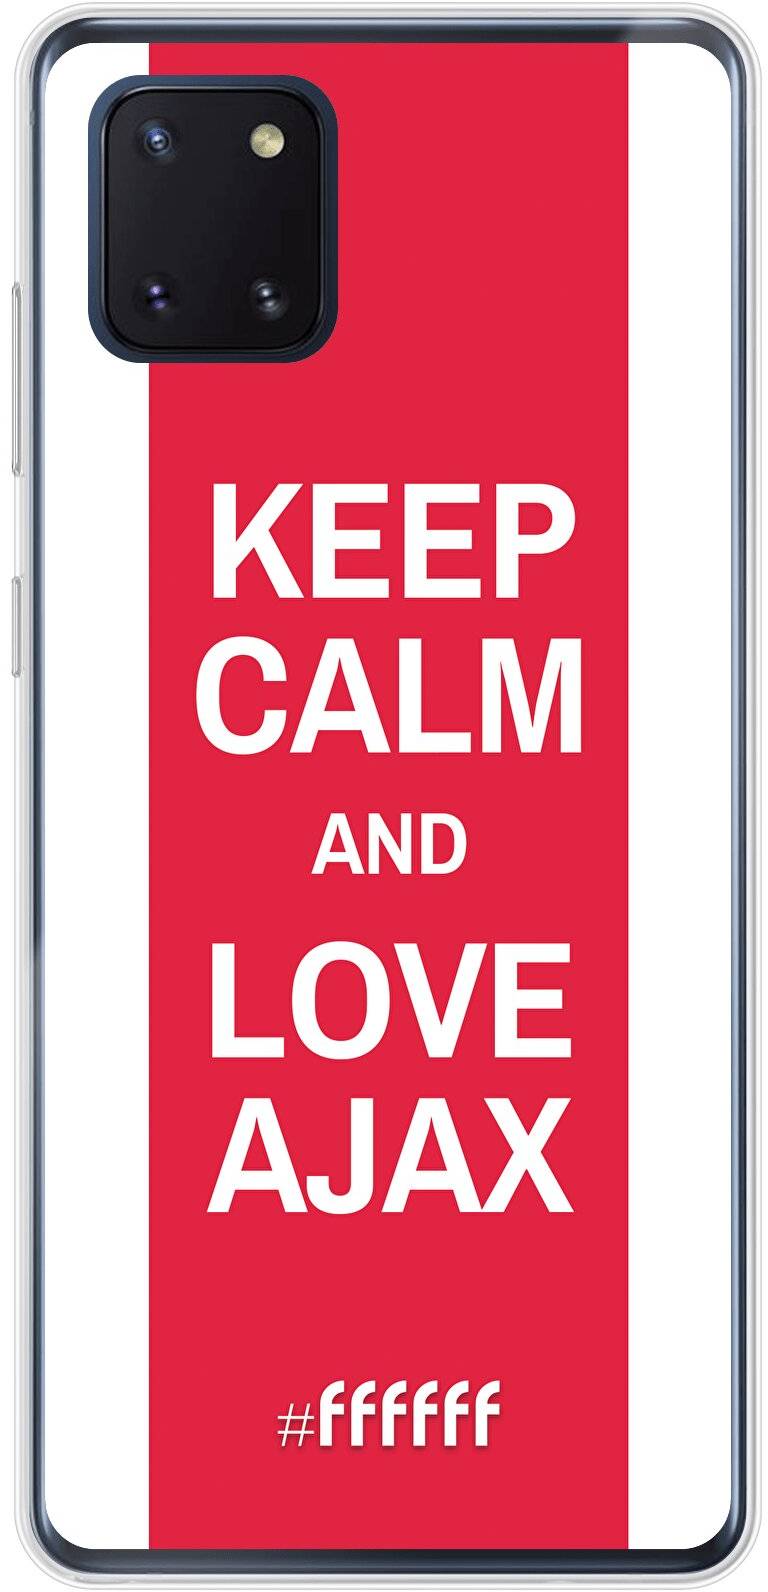 AFC Ajax Keep Calm Galaxy Note 10 Lite